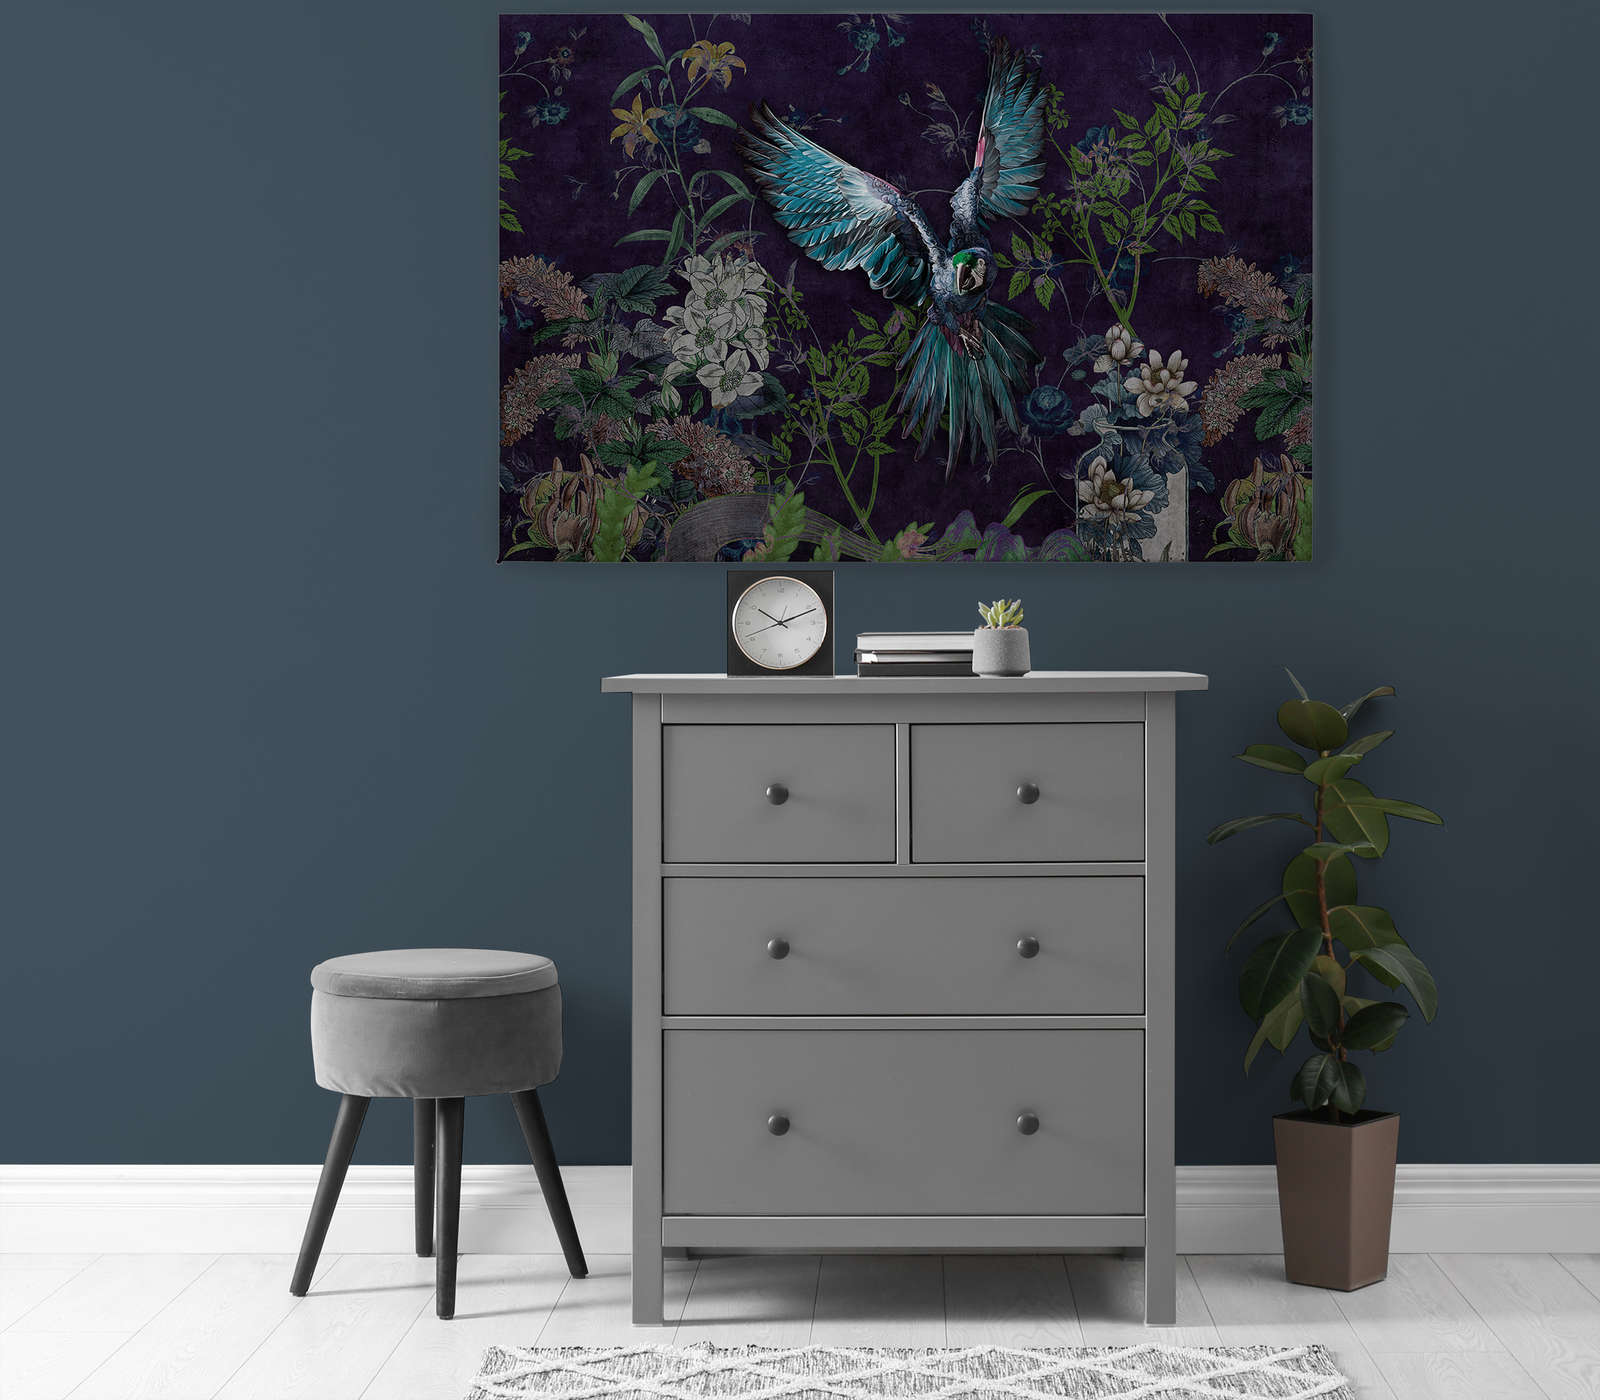             Tropical Hero 2 - Perroquet toile fleurs & fond noir - 1,20 m x 0,80 m
        